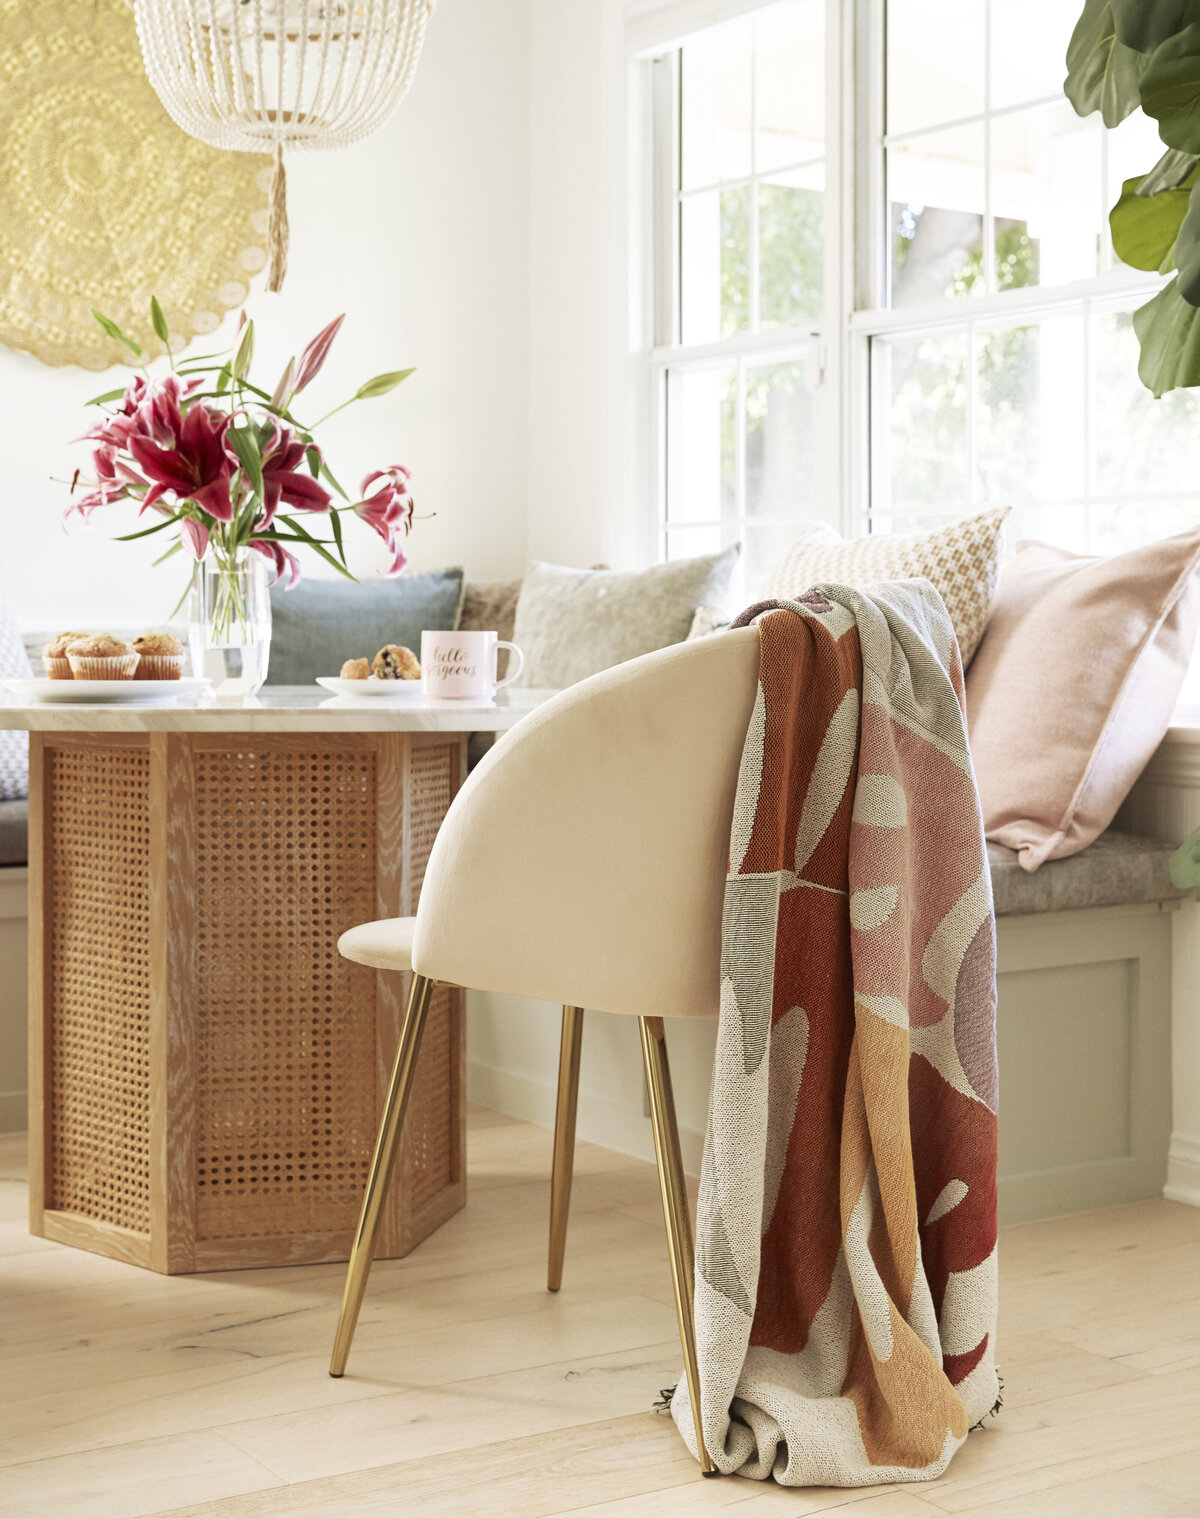 Minimal Design Kitchen Comfy Chair